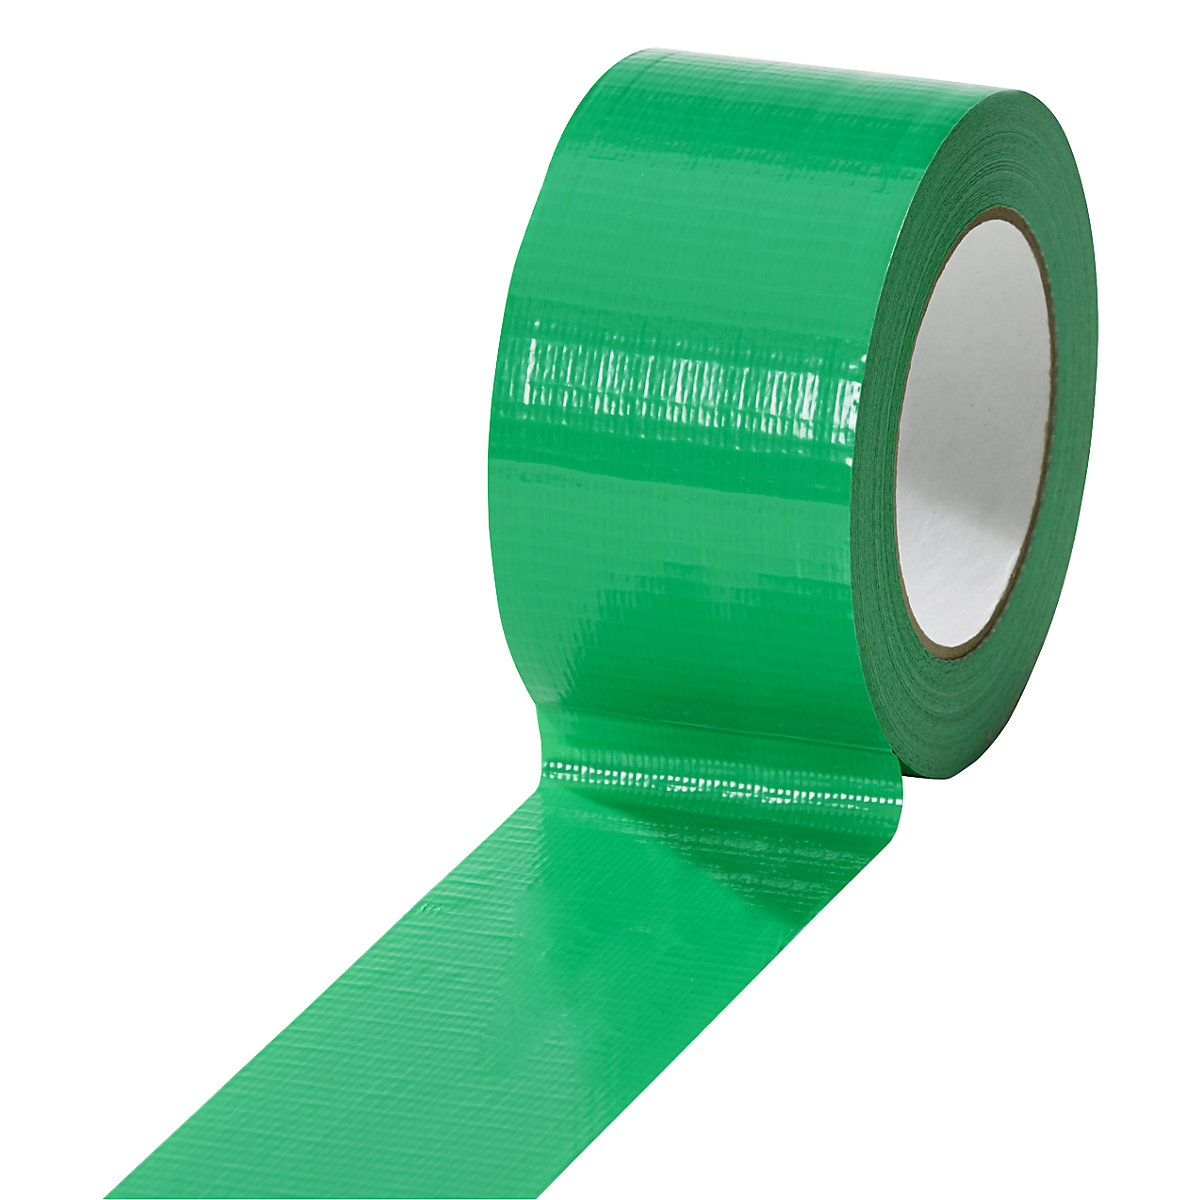 Textilná páska, v rôznych farbách, OJ 18 kotúčov, zelená, šírka pásky 50 mm-7